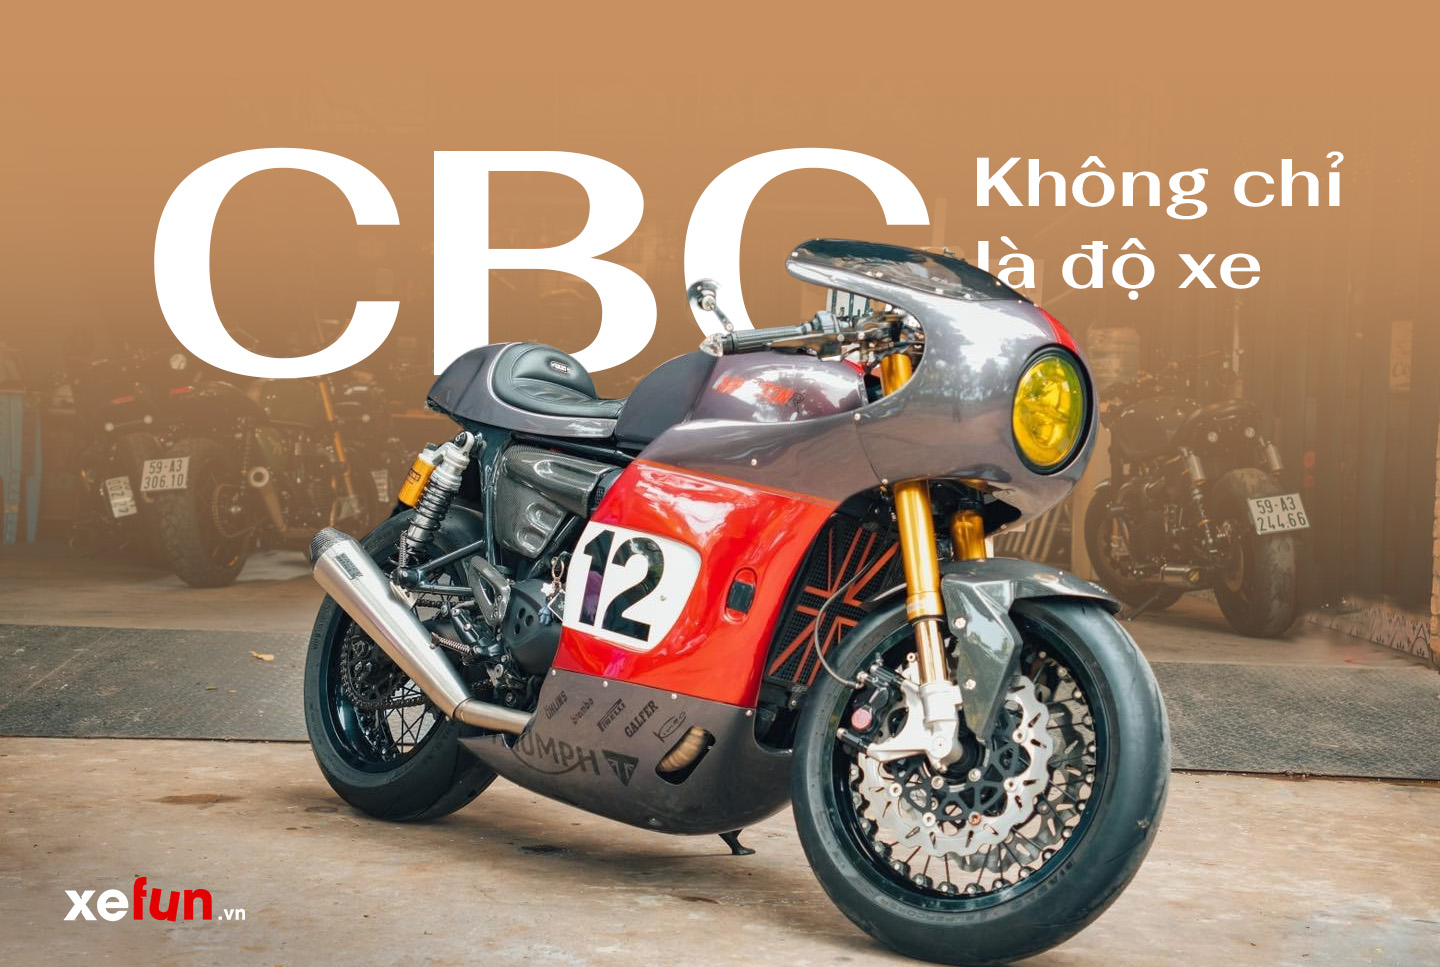 Xuong-do-cbc-workshop-danh-cho-biker-xe-mo-to-classic-xefun-345446